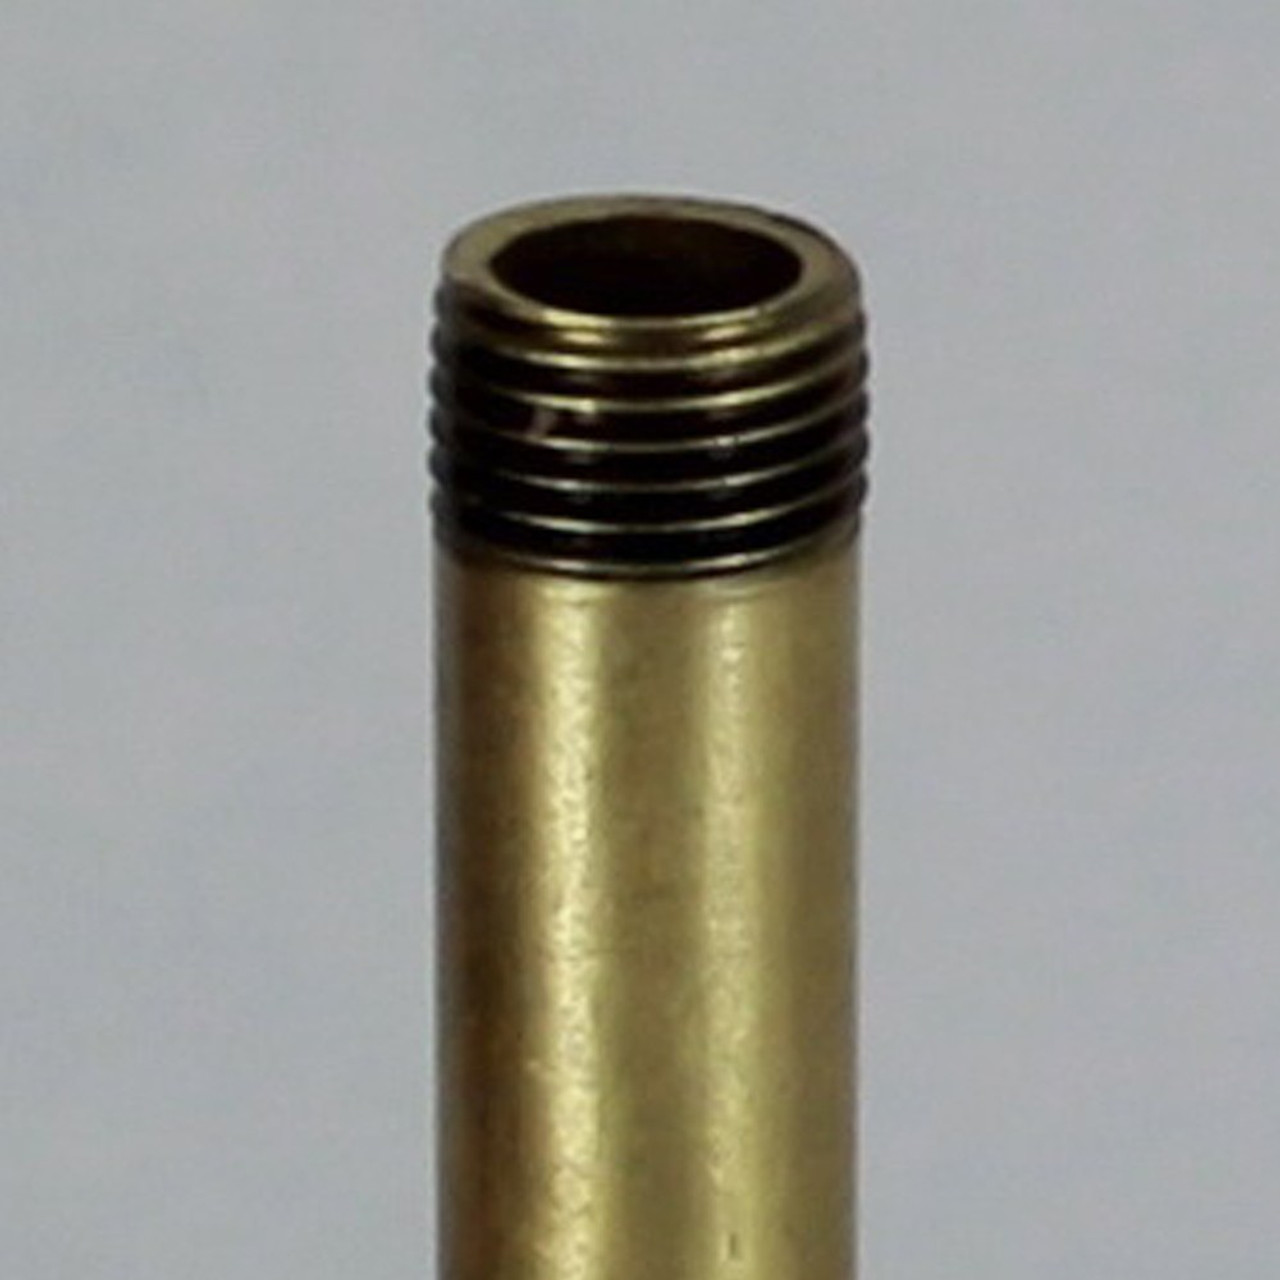 2 OD - Polished Brass Tubing